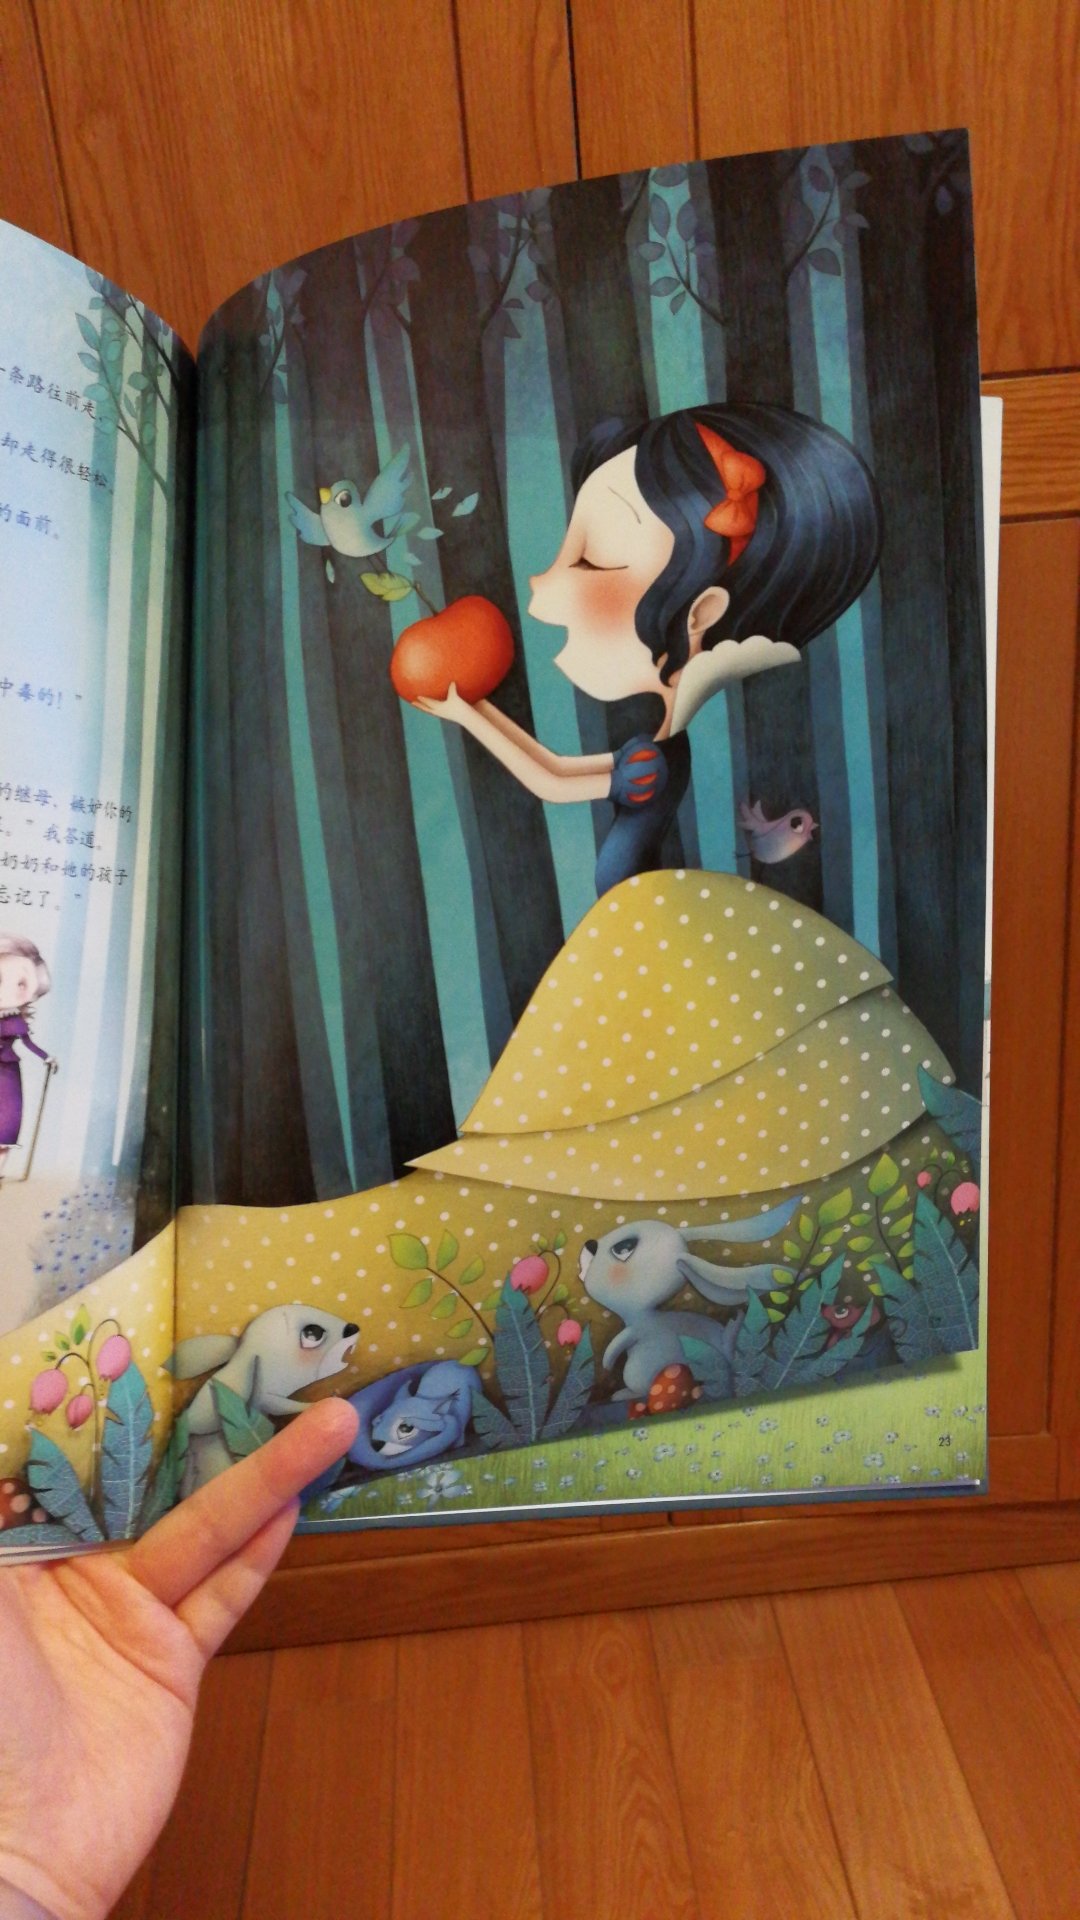 梦幻有爱的一本书，里面有很多熟悉的童话人物，三岁半的孩子喜欢。